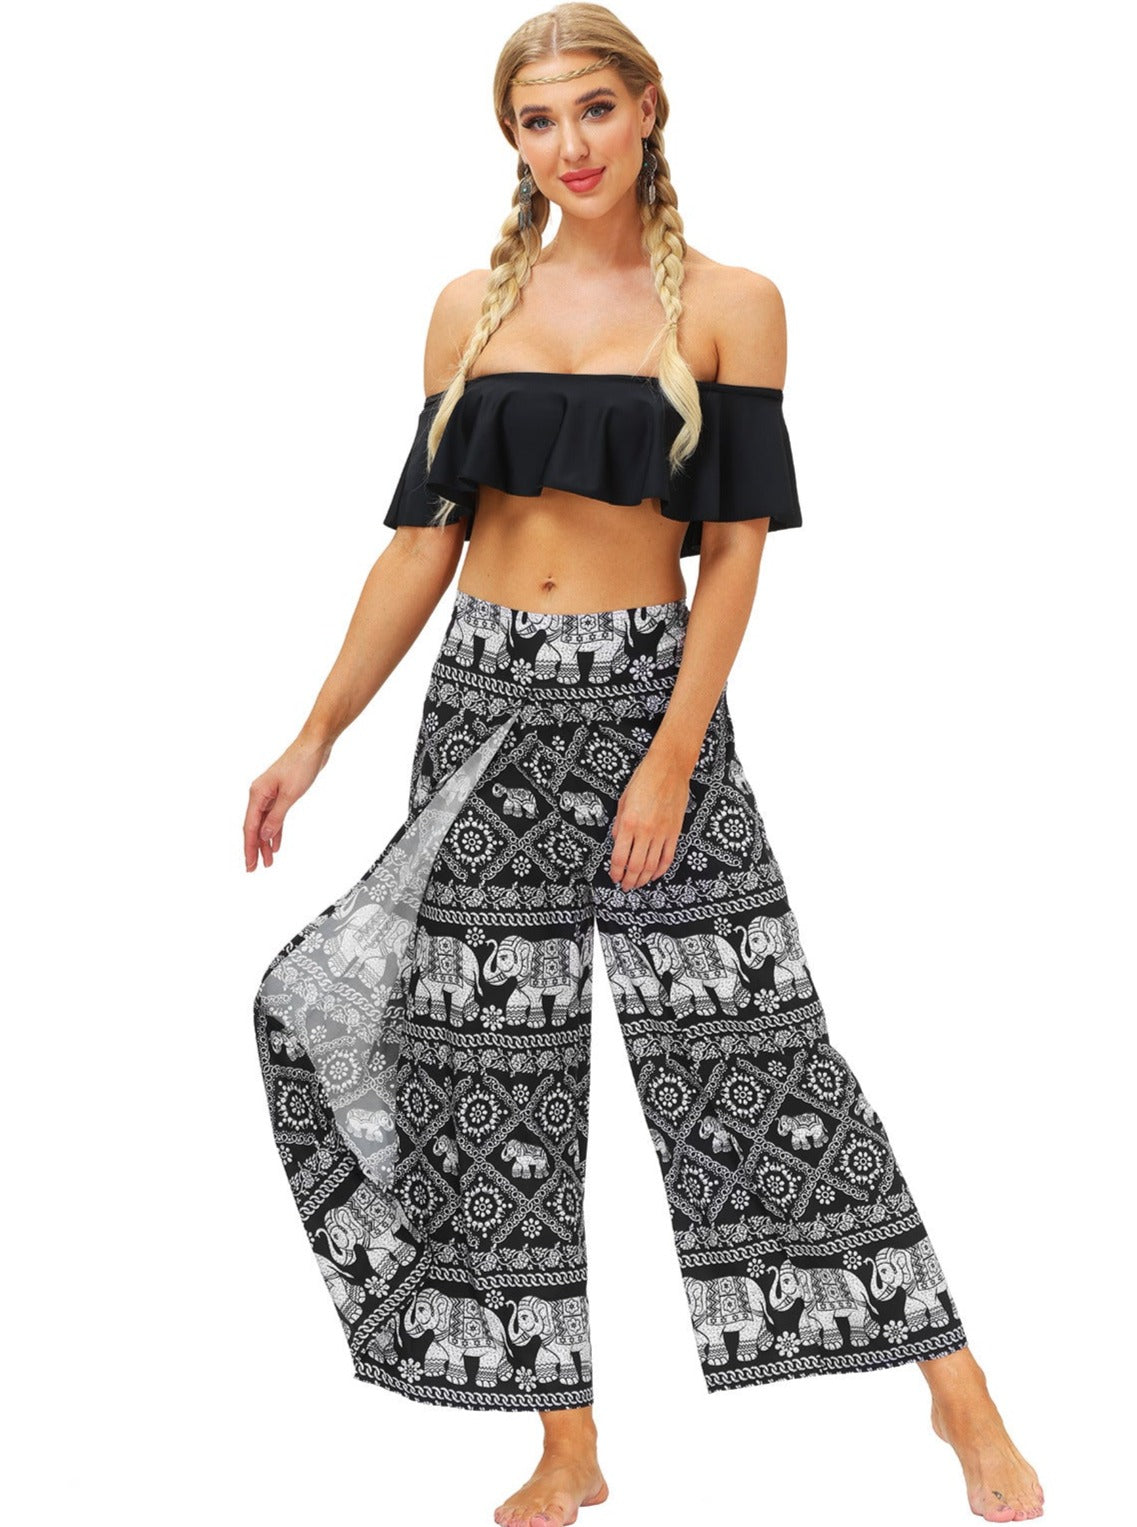 Ethnic Style Digital Printed Yoga Dance Pants